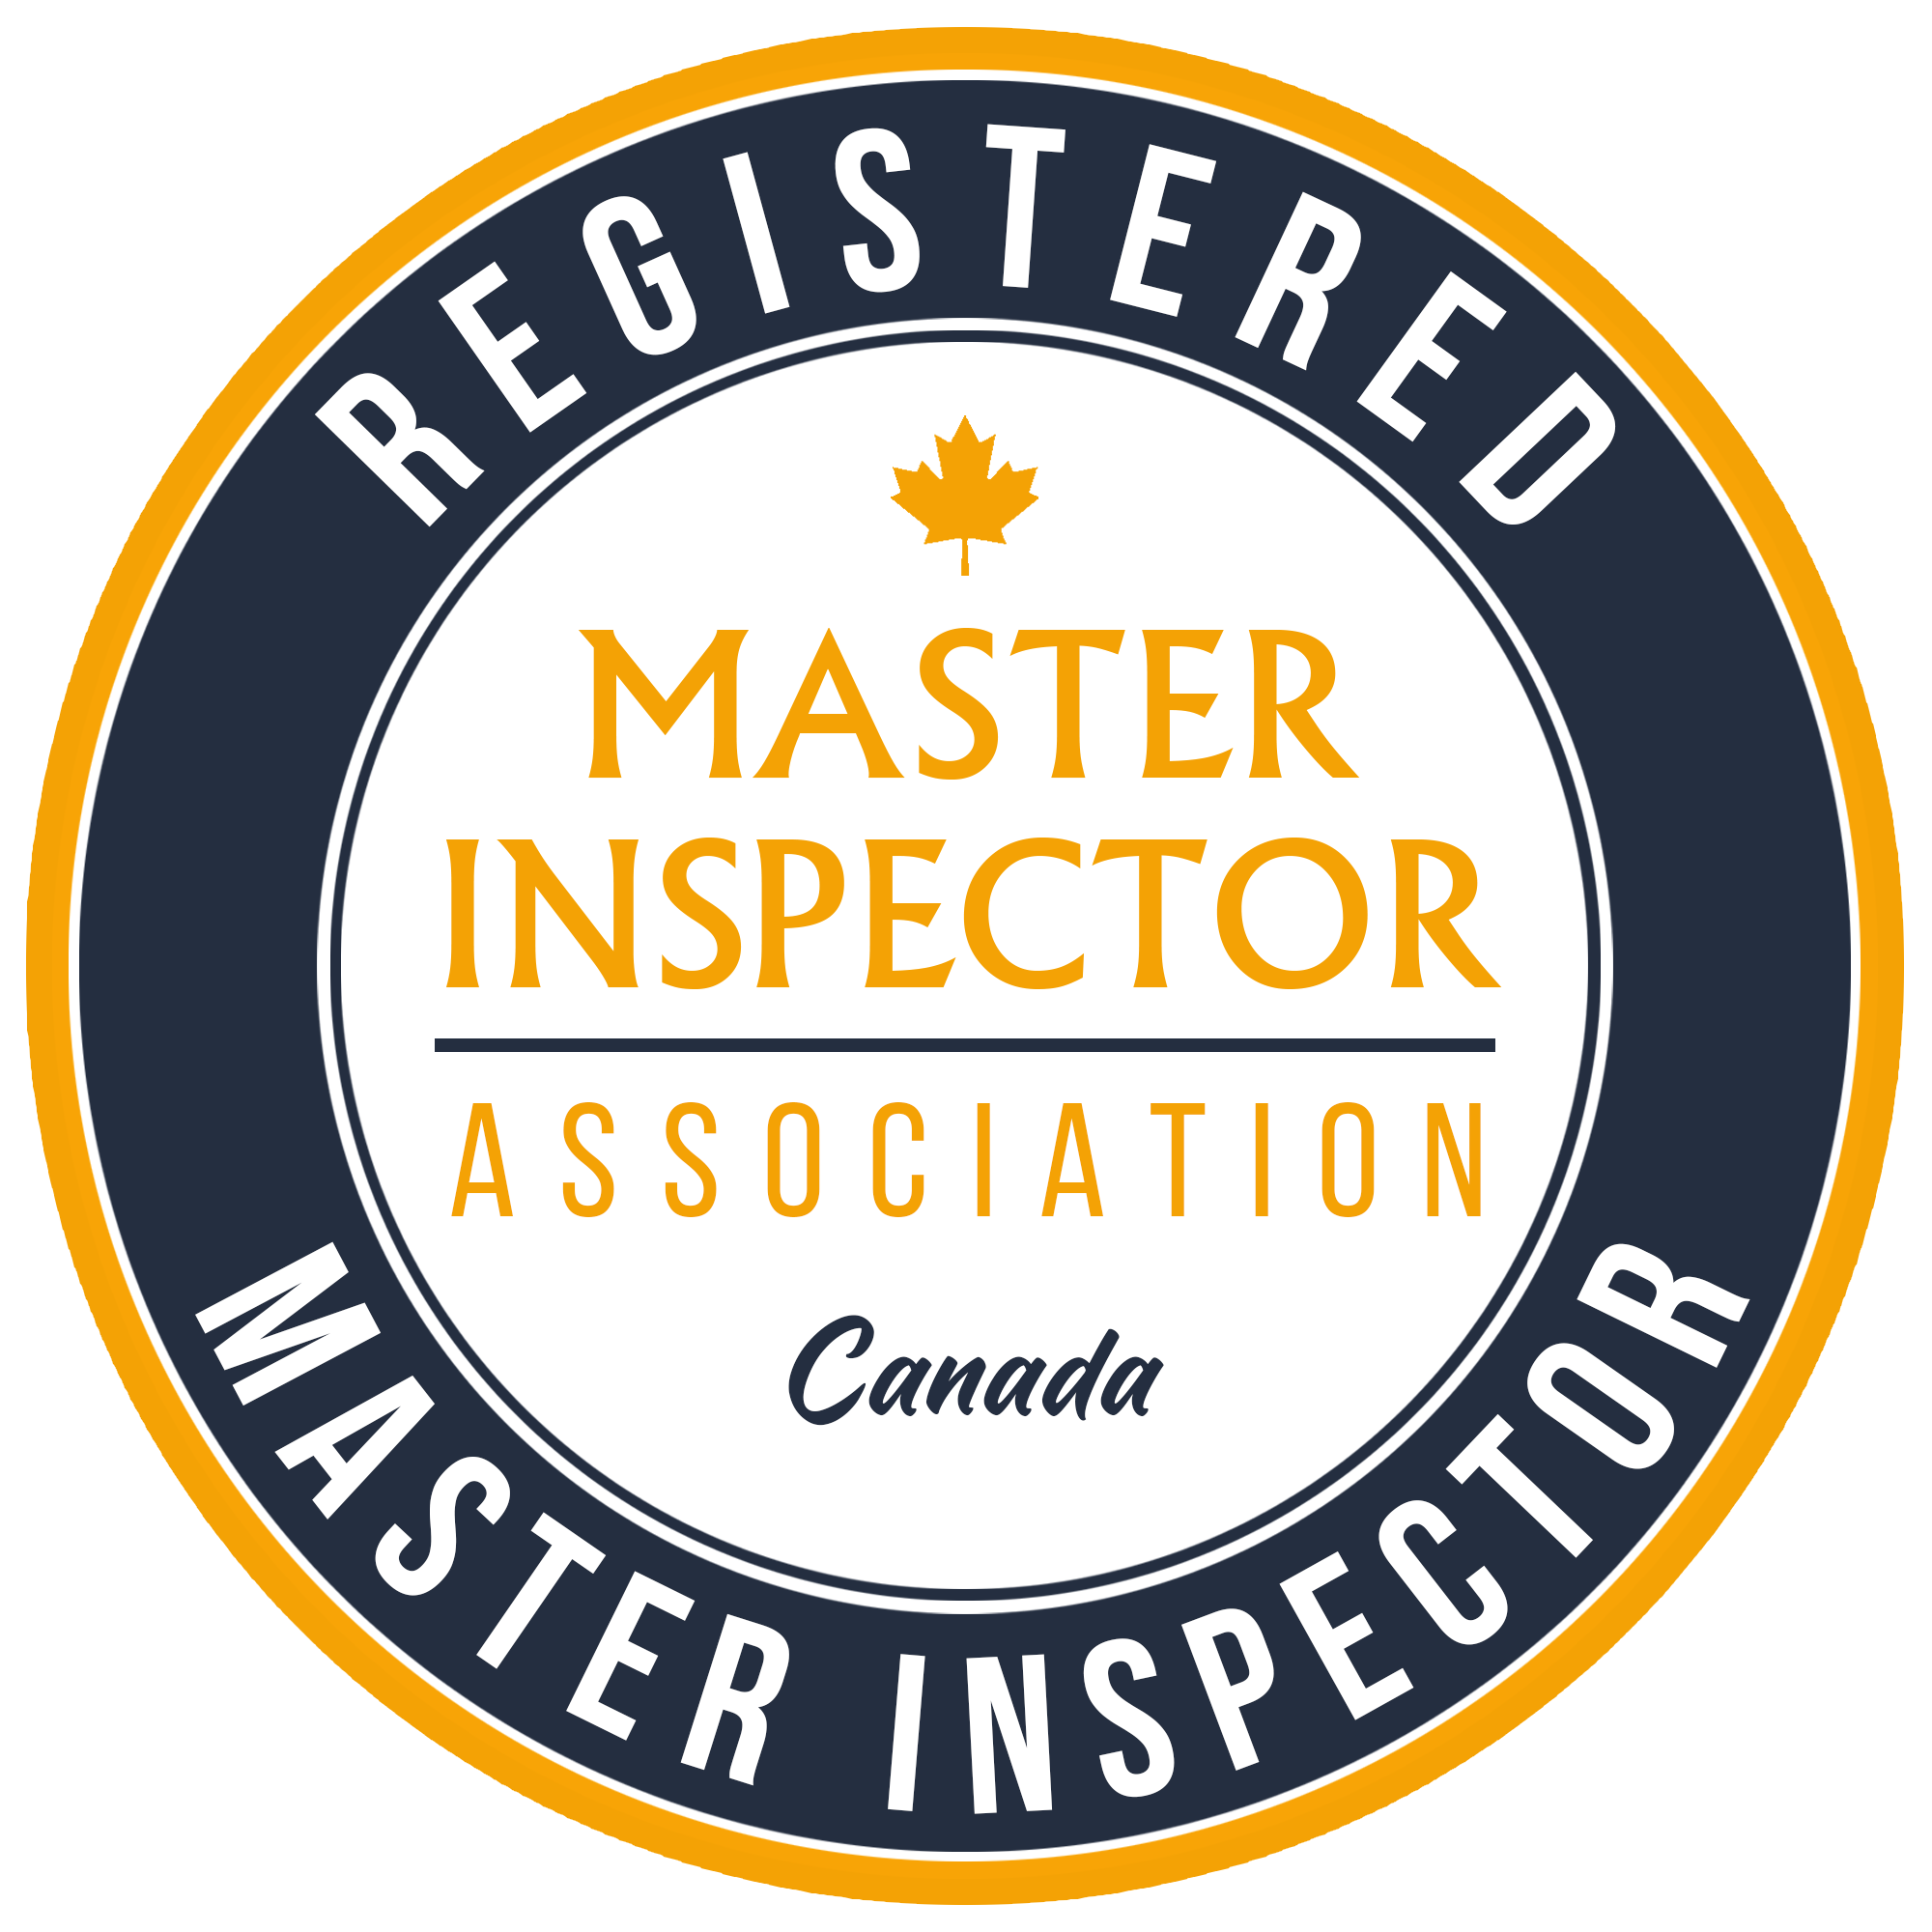 Registered Master Inspector - Canada